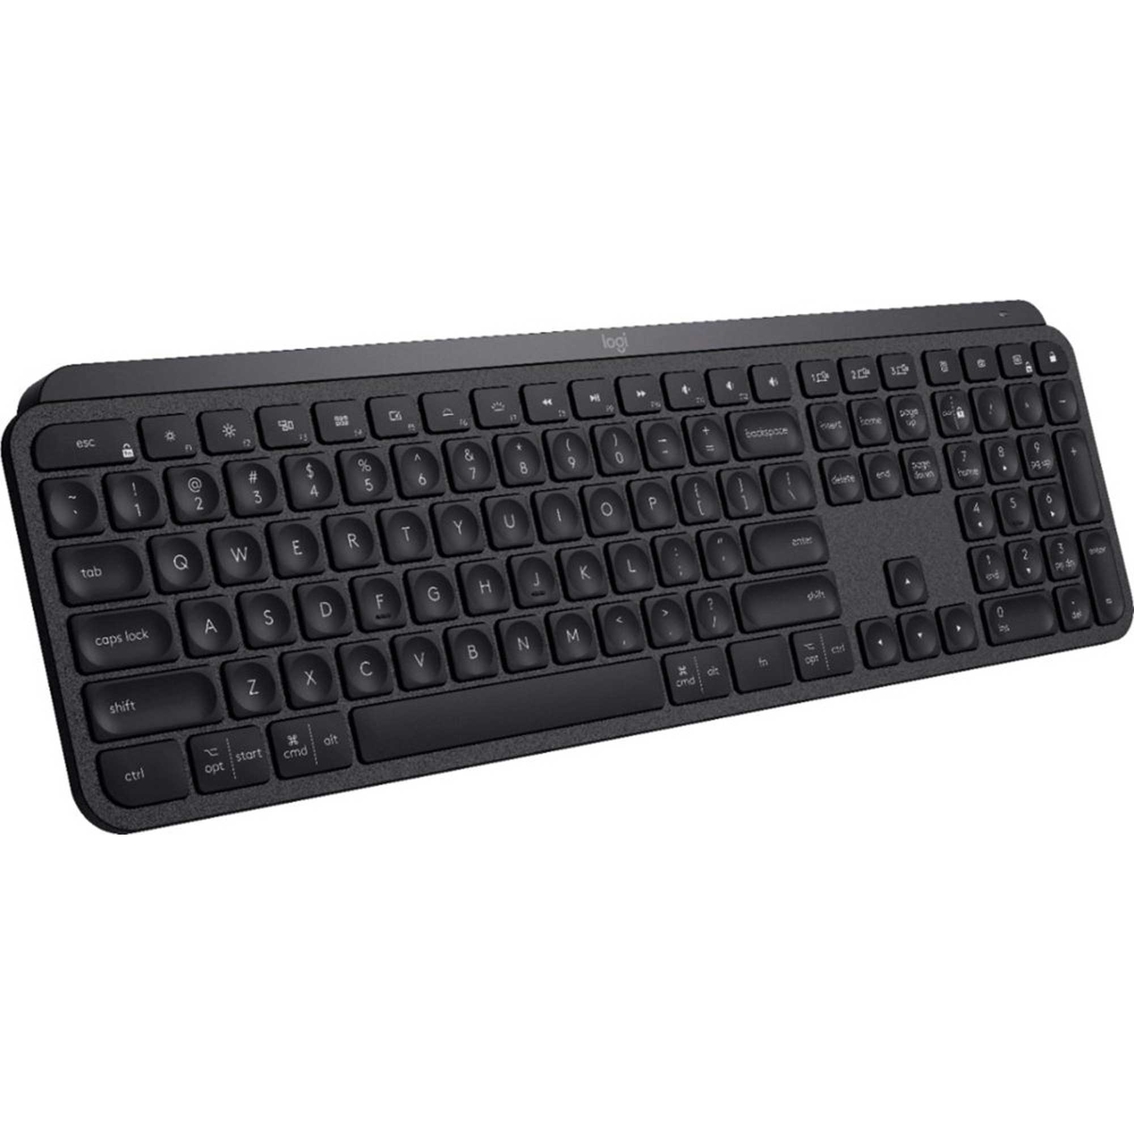 Logitech MX Keys Advanced Wireless Illuminated Keyboard - Image 2 of 4